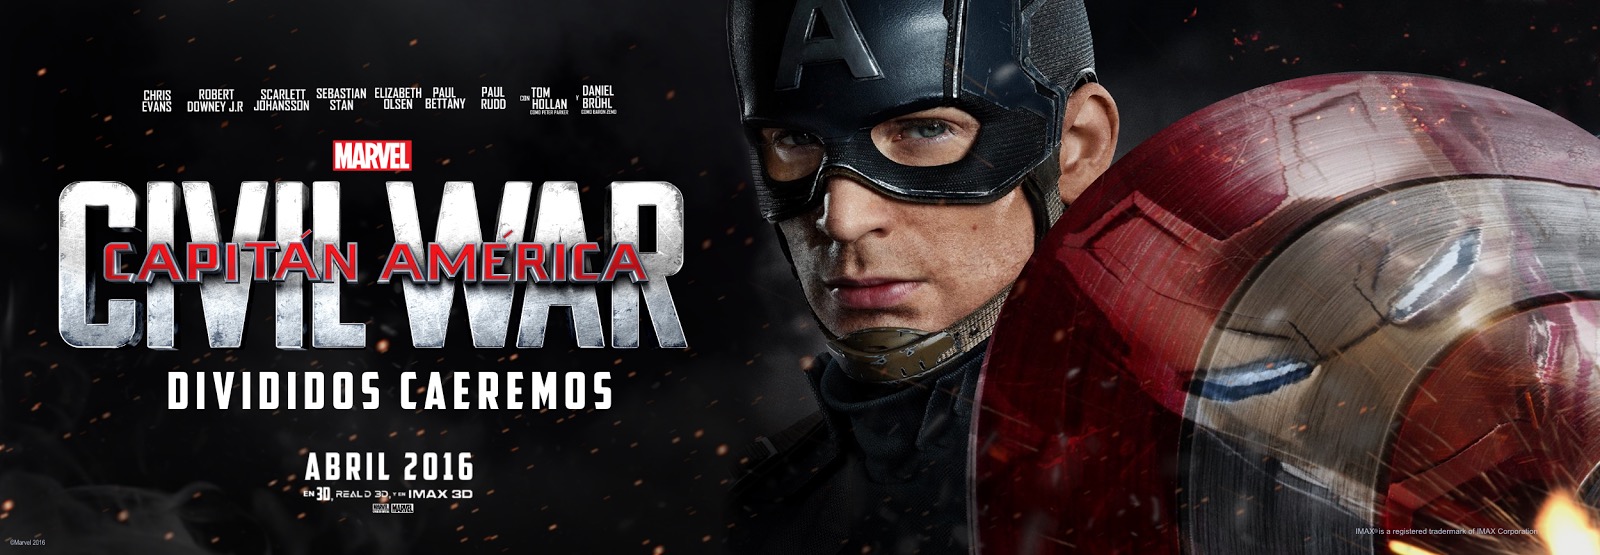 Captain America: Civil War, tomas falsas 